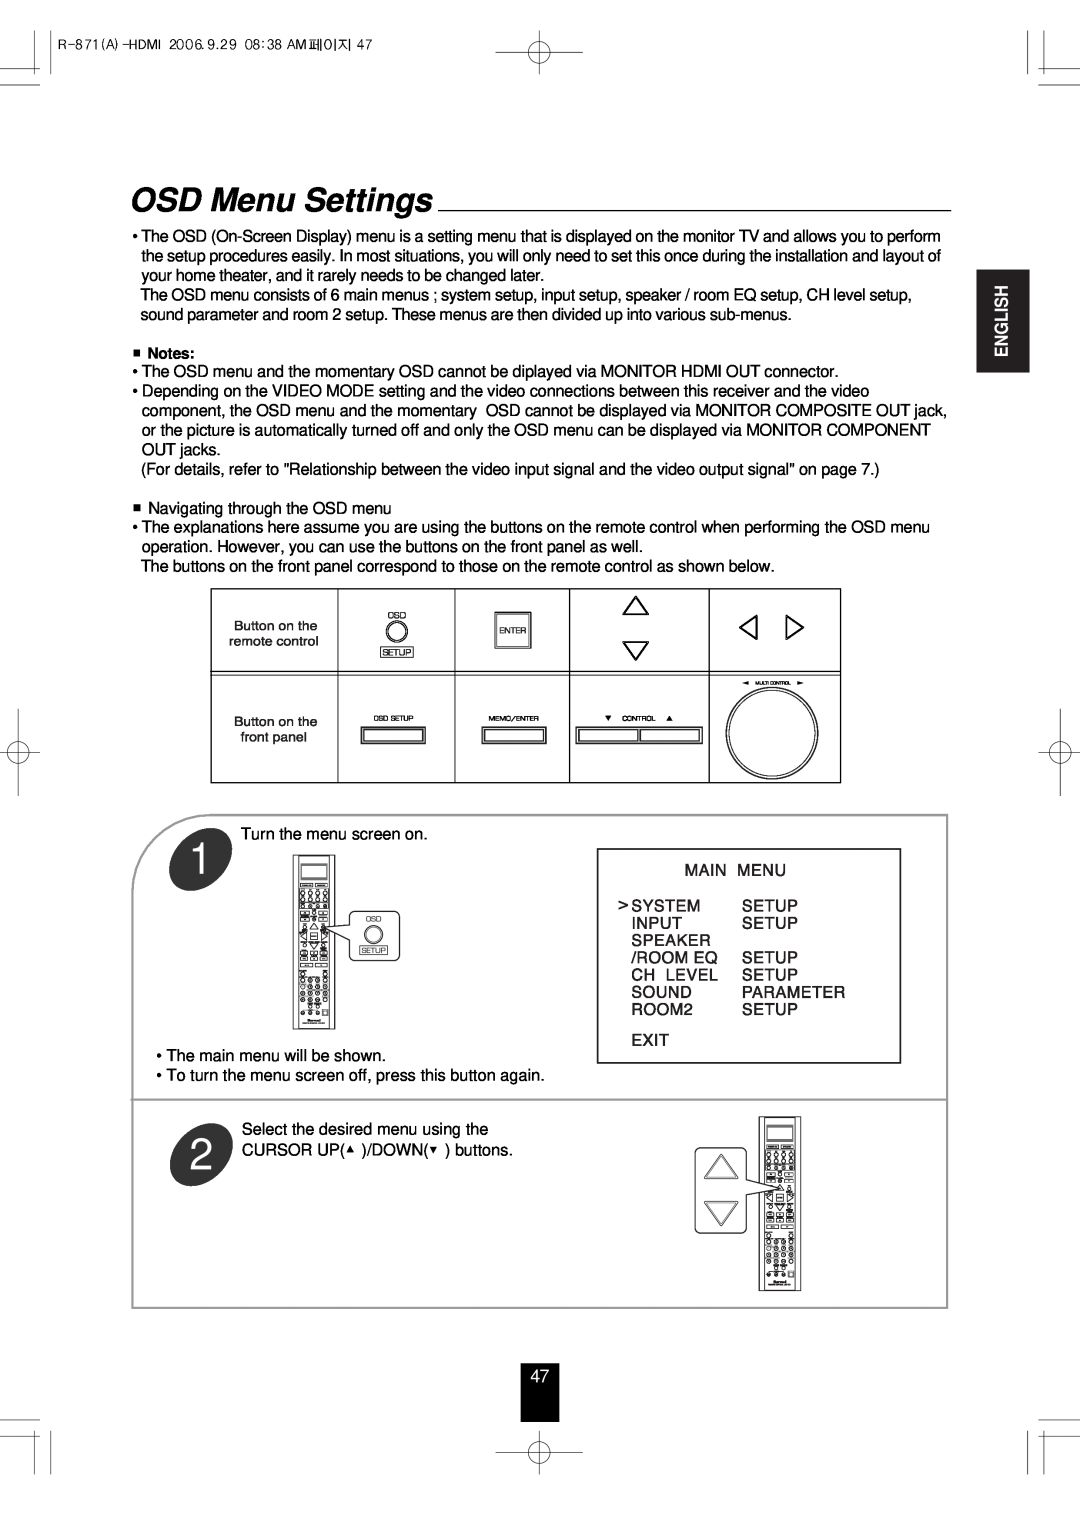 Sherwood R-871 manual OSD Menu Settings, English 